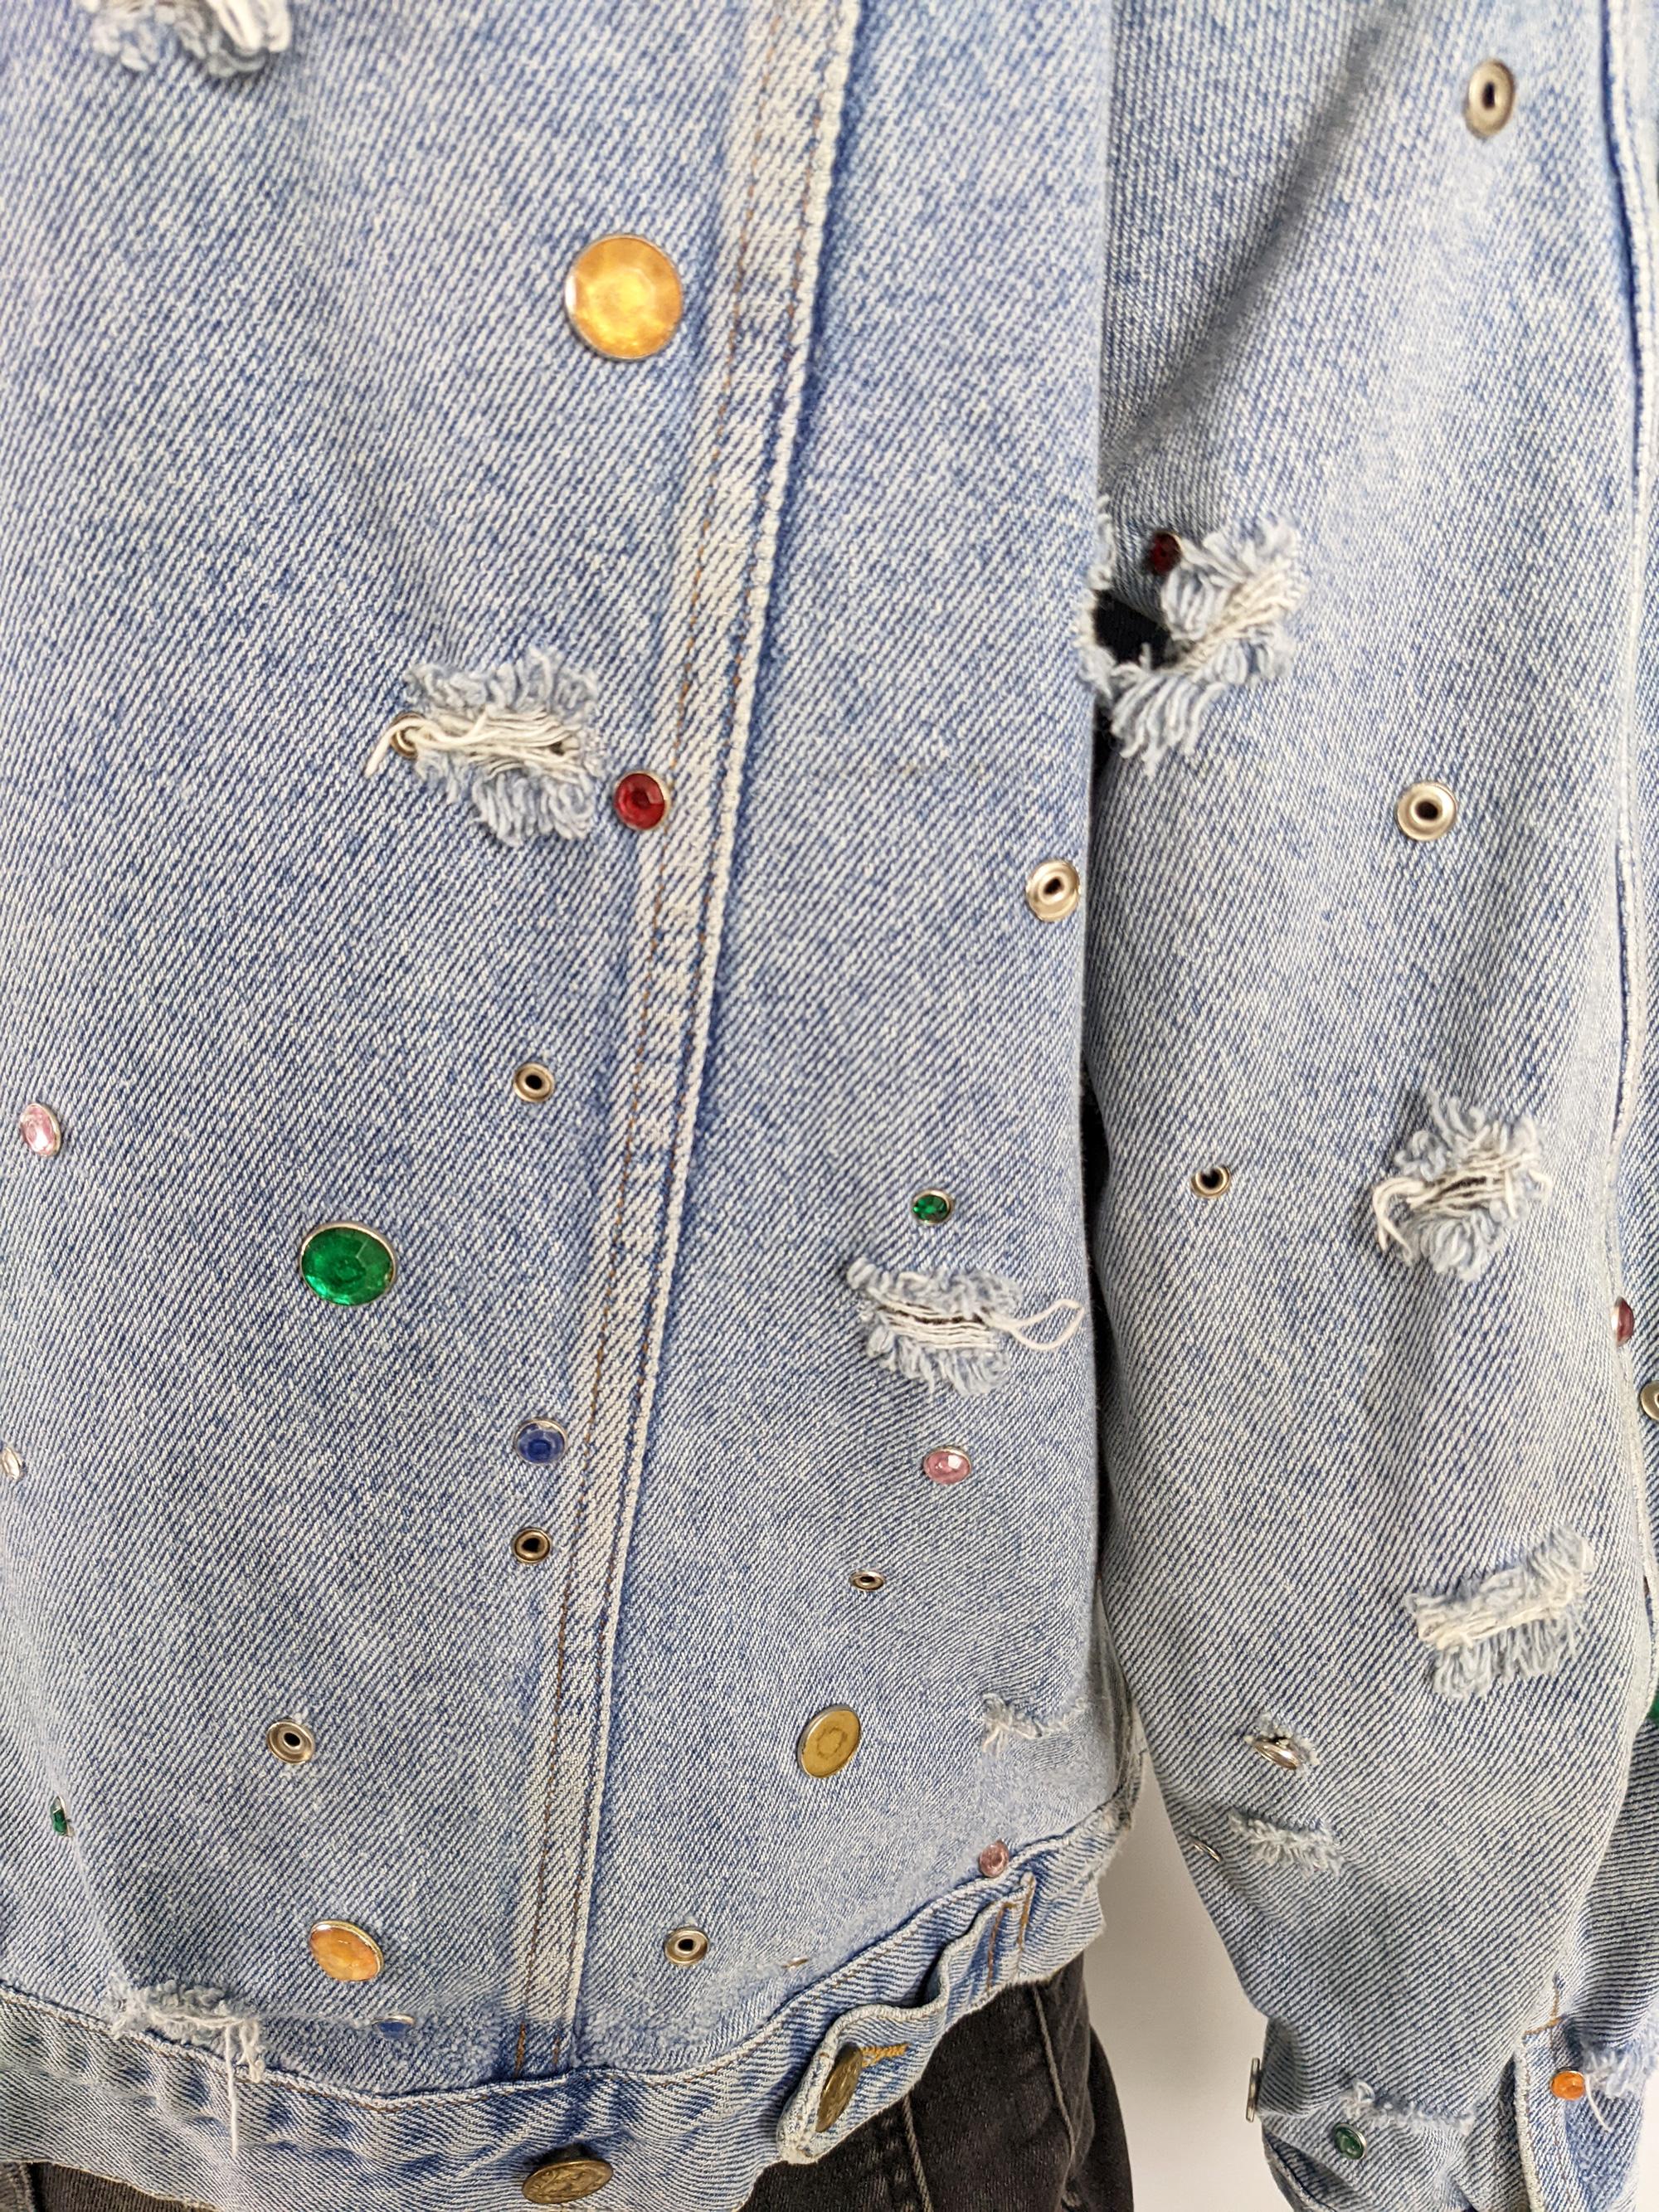 Katharine Hamnett Mens Vintage Incredible Studded Distressed Denim Jean Jacket For Sale 4